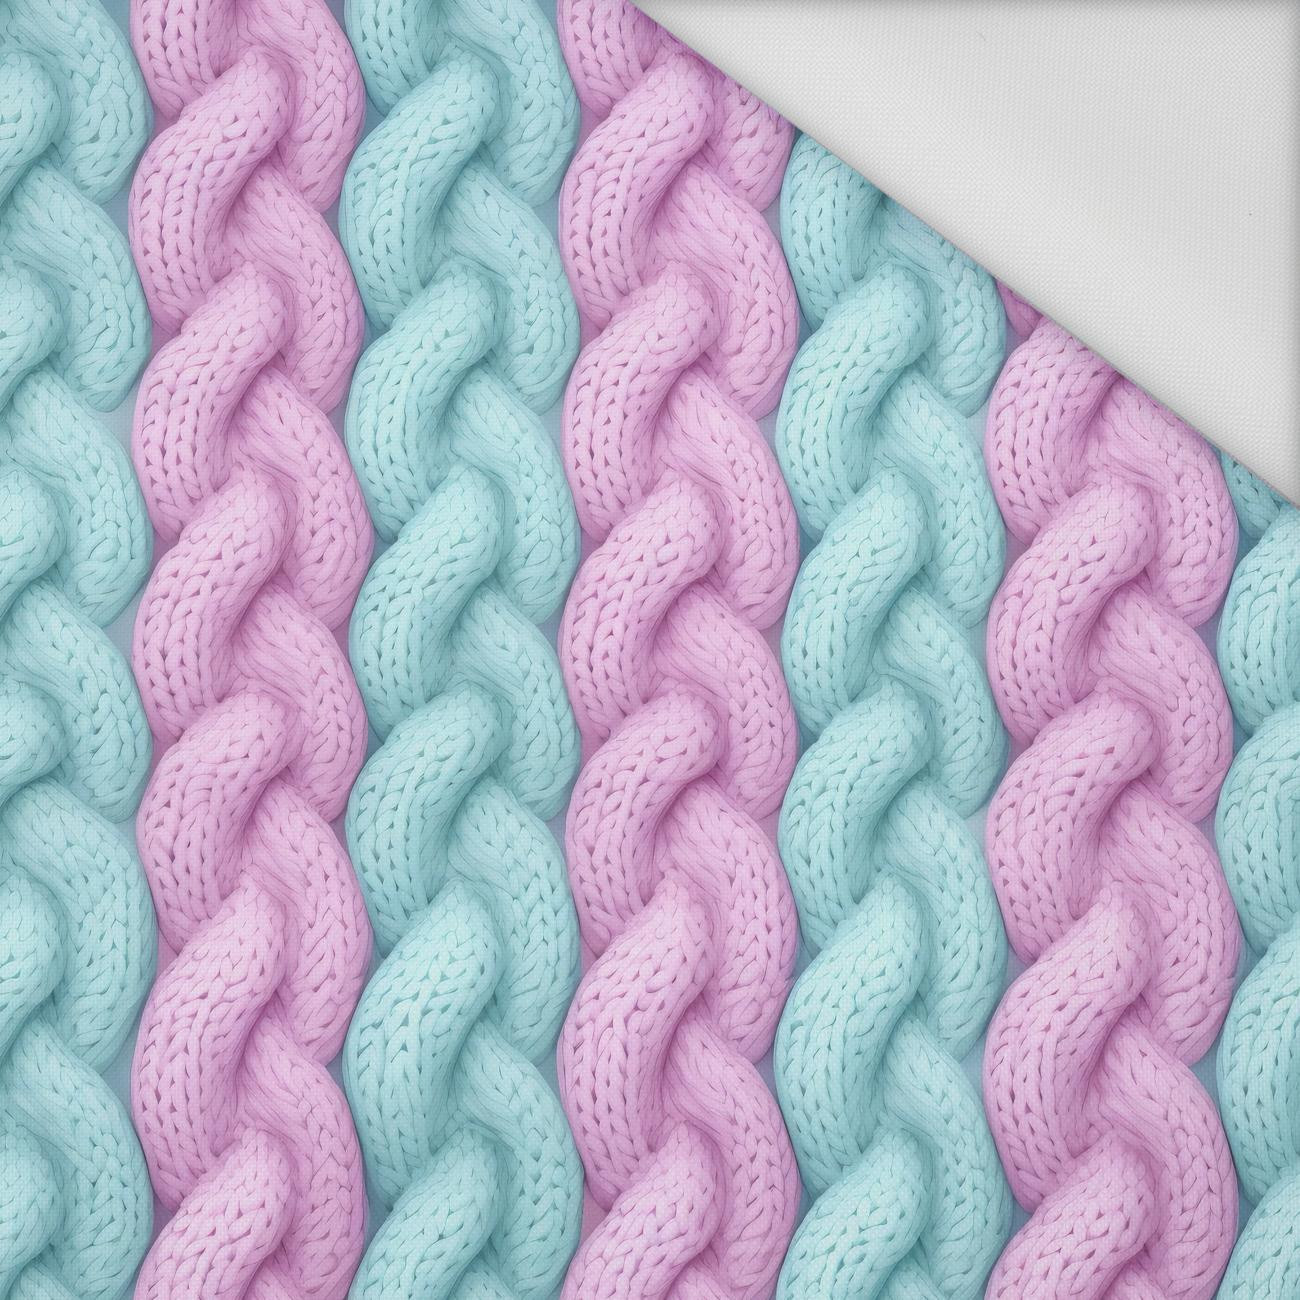 IMITATION PASTEL SWEATER PAT. 4 - Waterproof woven fabric